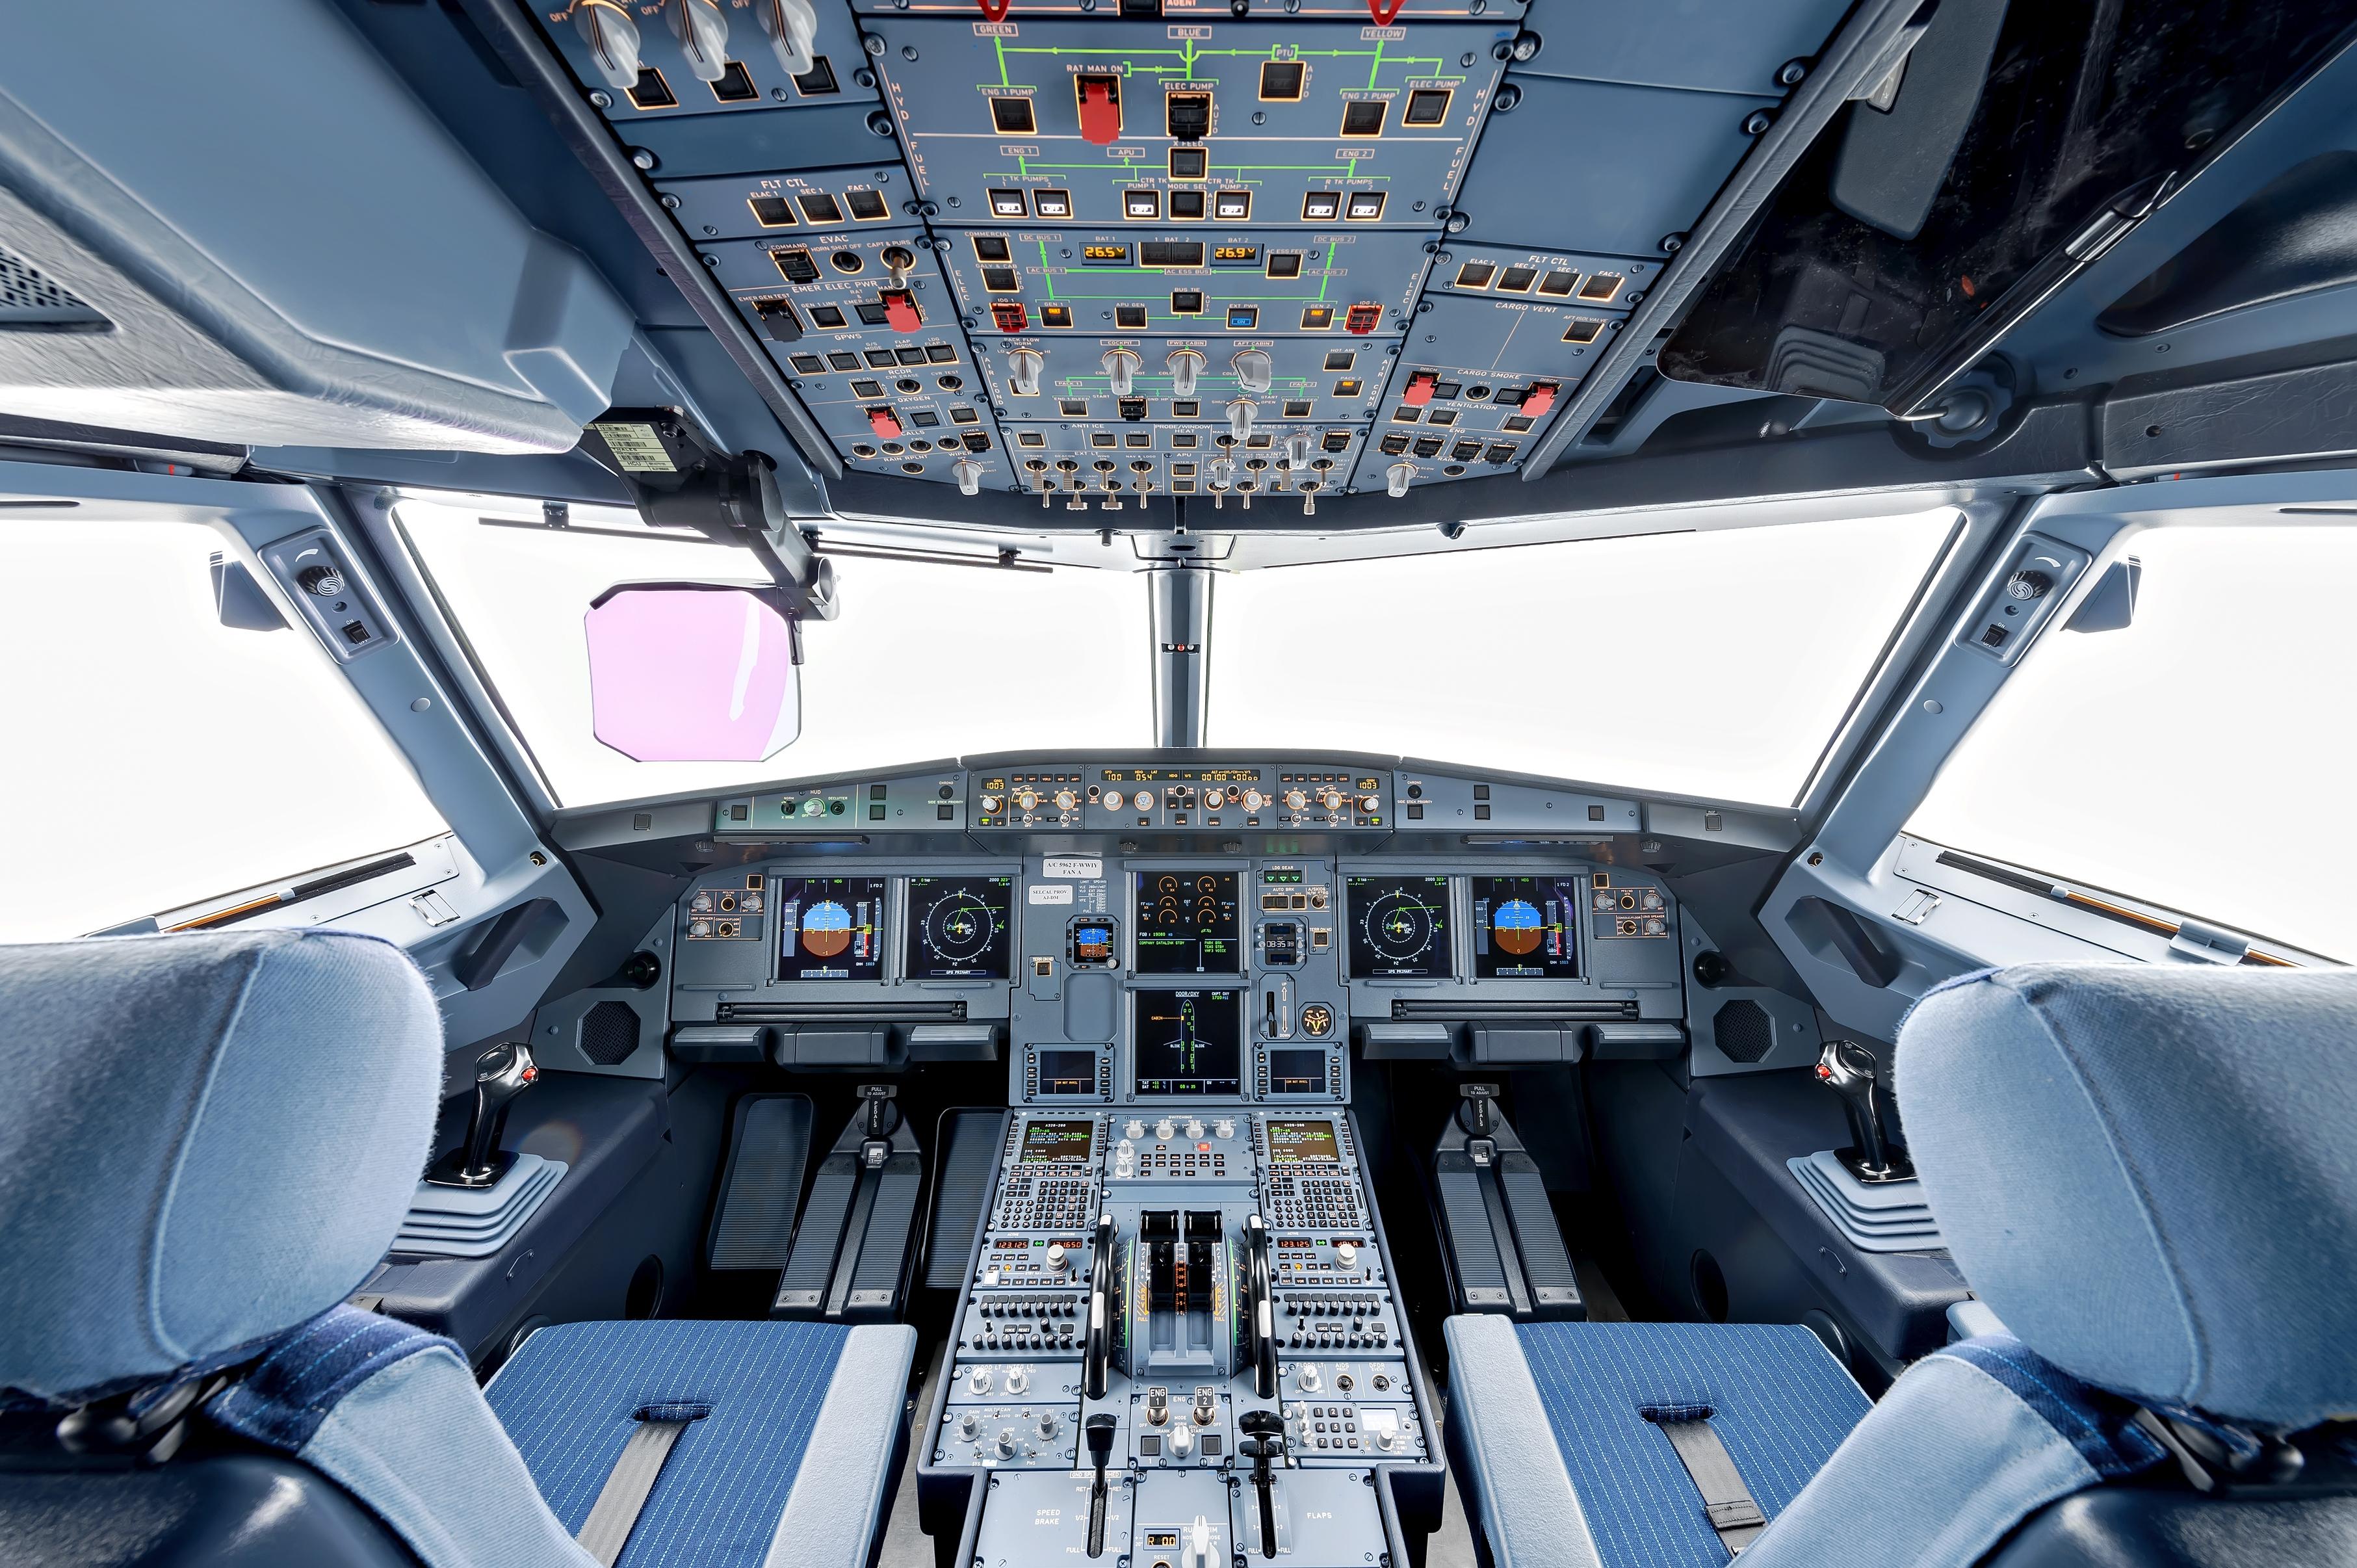 空客A330-300 图库摄影片. 图片 包括有 选件类, 旅途, 商业, 会议室, 机场, 飞行, 多媒体 - 157163472